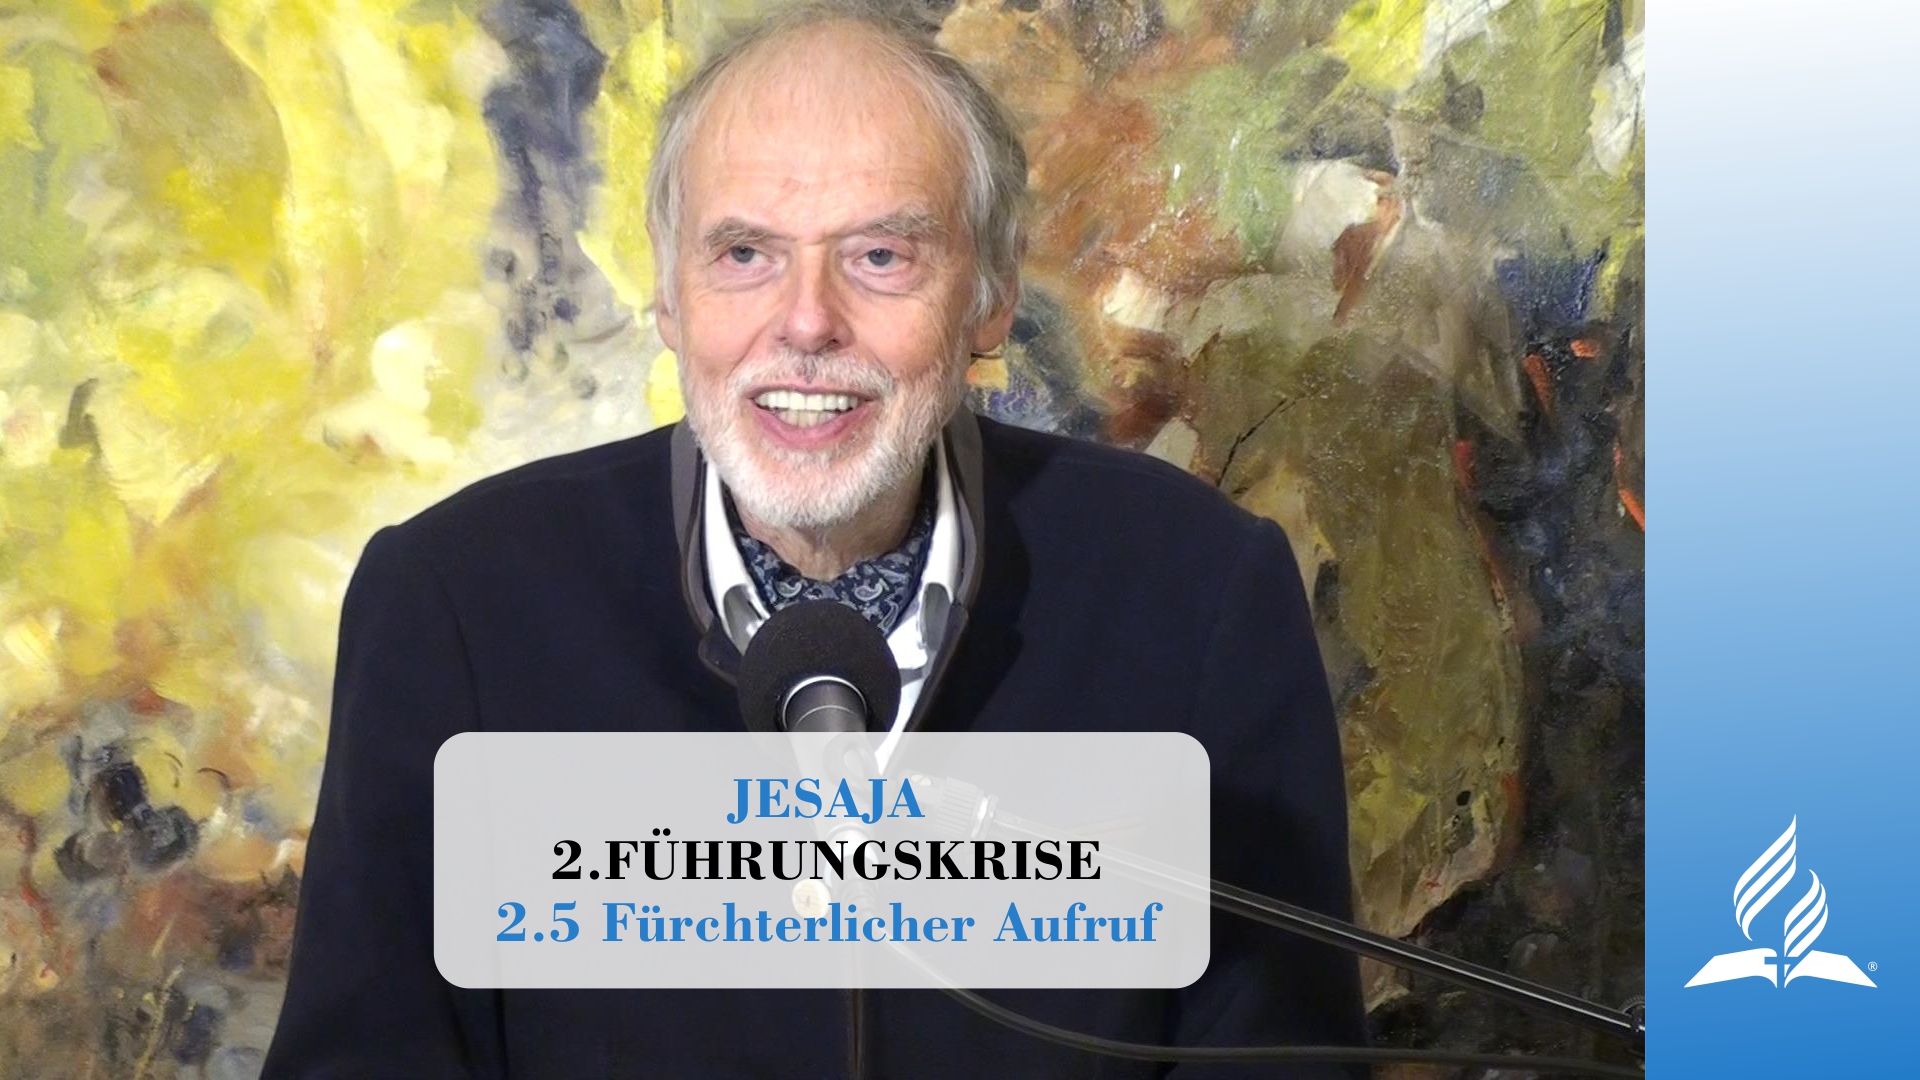 2.5 Fürchterlicher Aufruf – FÜHRUNGSKRISE | Pastor Mag. Kurt Piesslinger